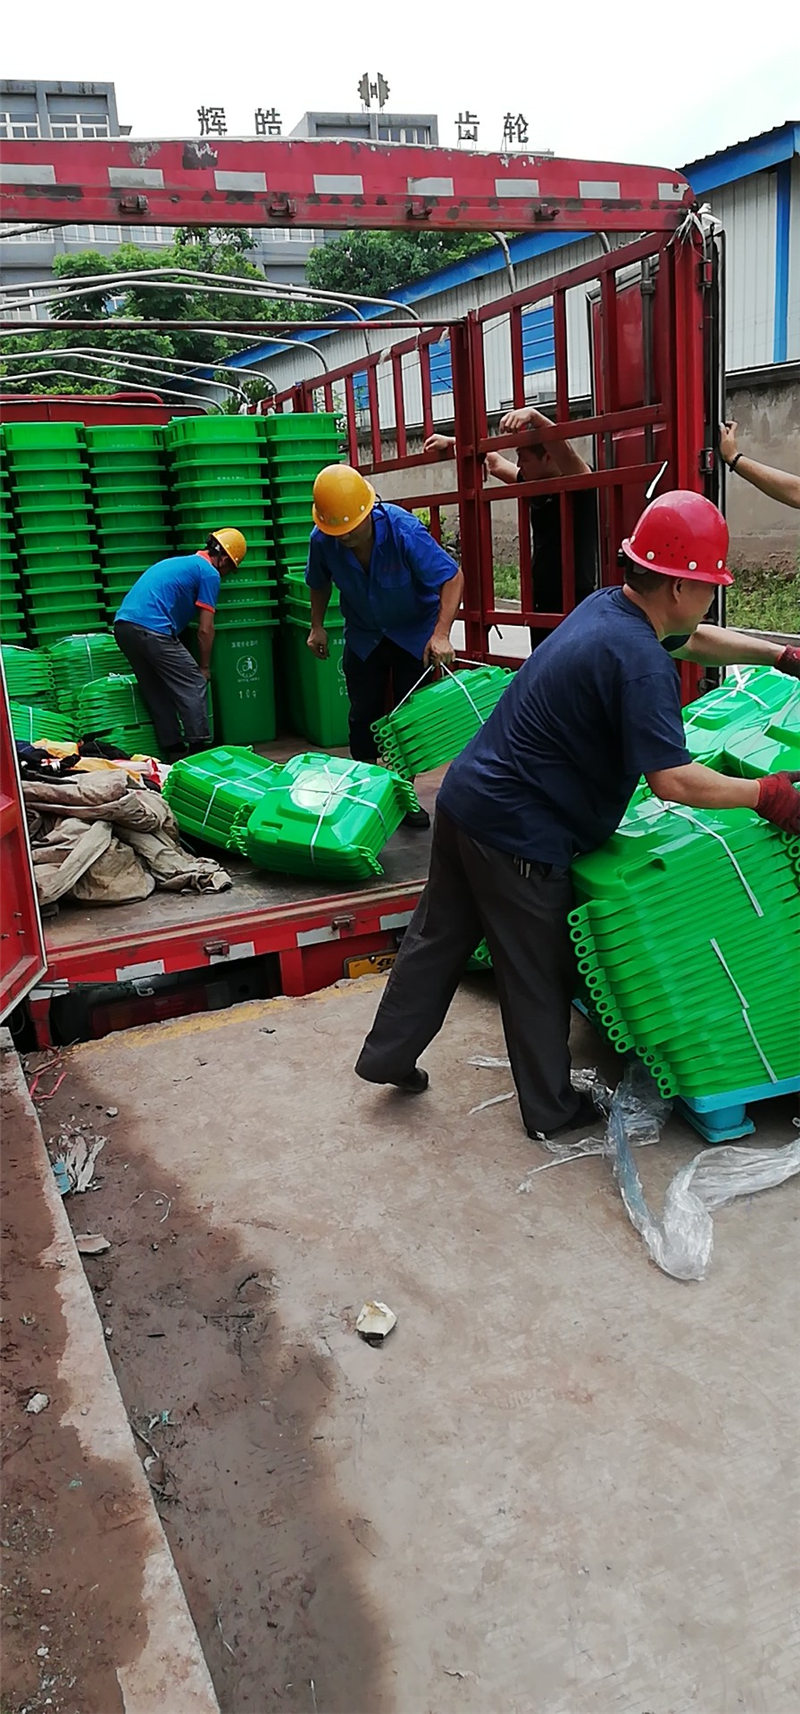 上海嘉定100L分类垃圾桶厂家分类垃圾桶货量缺乏